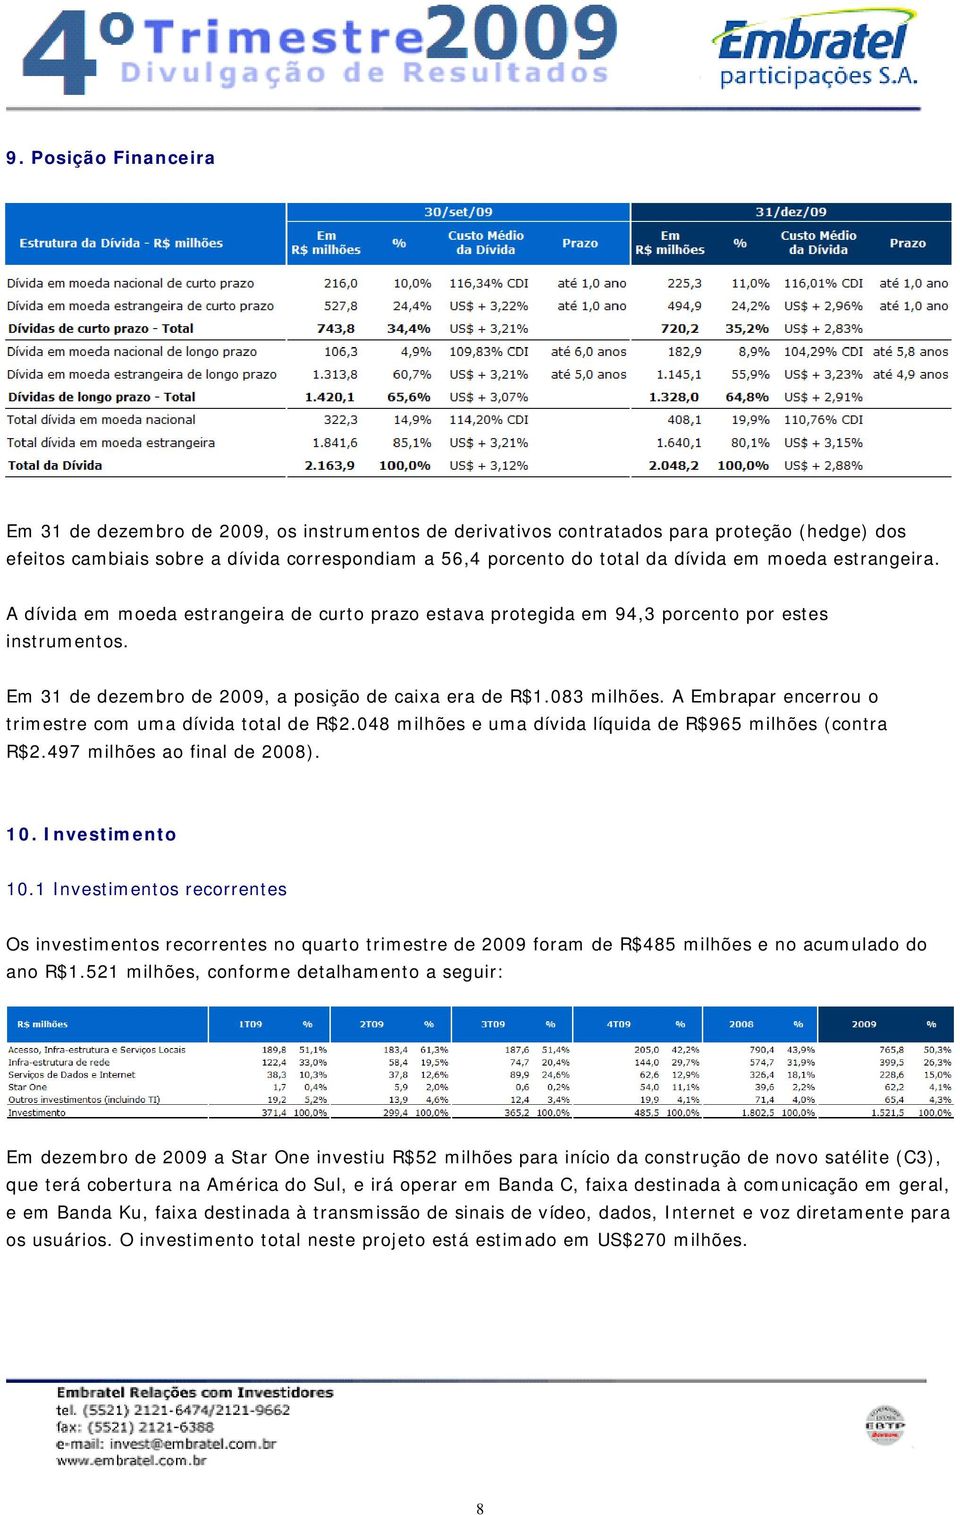 A Embrapar encerrou o trimestre com uma dívida total de R$2.048 milhões e uma dívida líquida de R$965 milhões (contra R$2.497 milhões ao final de 2008). 10. Investimento 10.